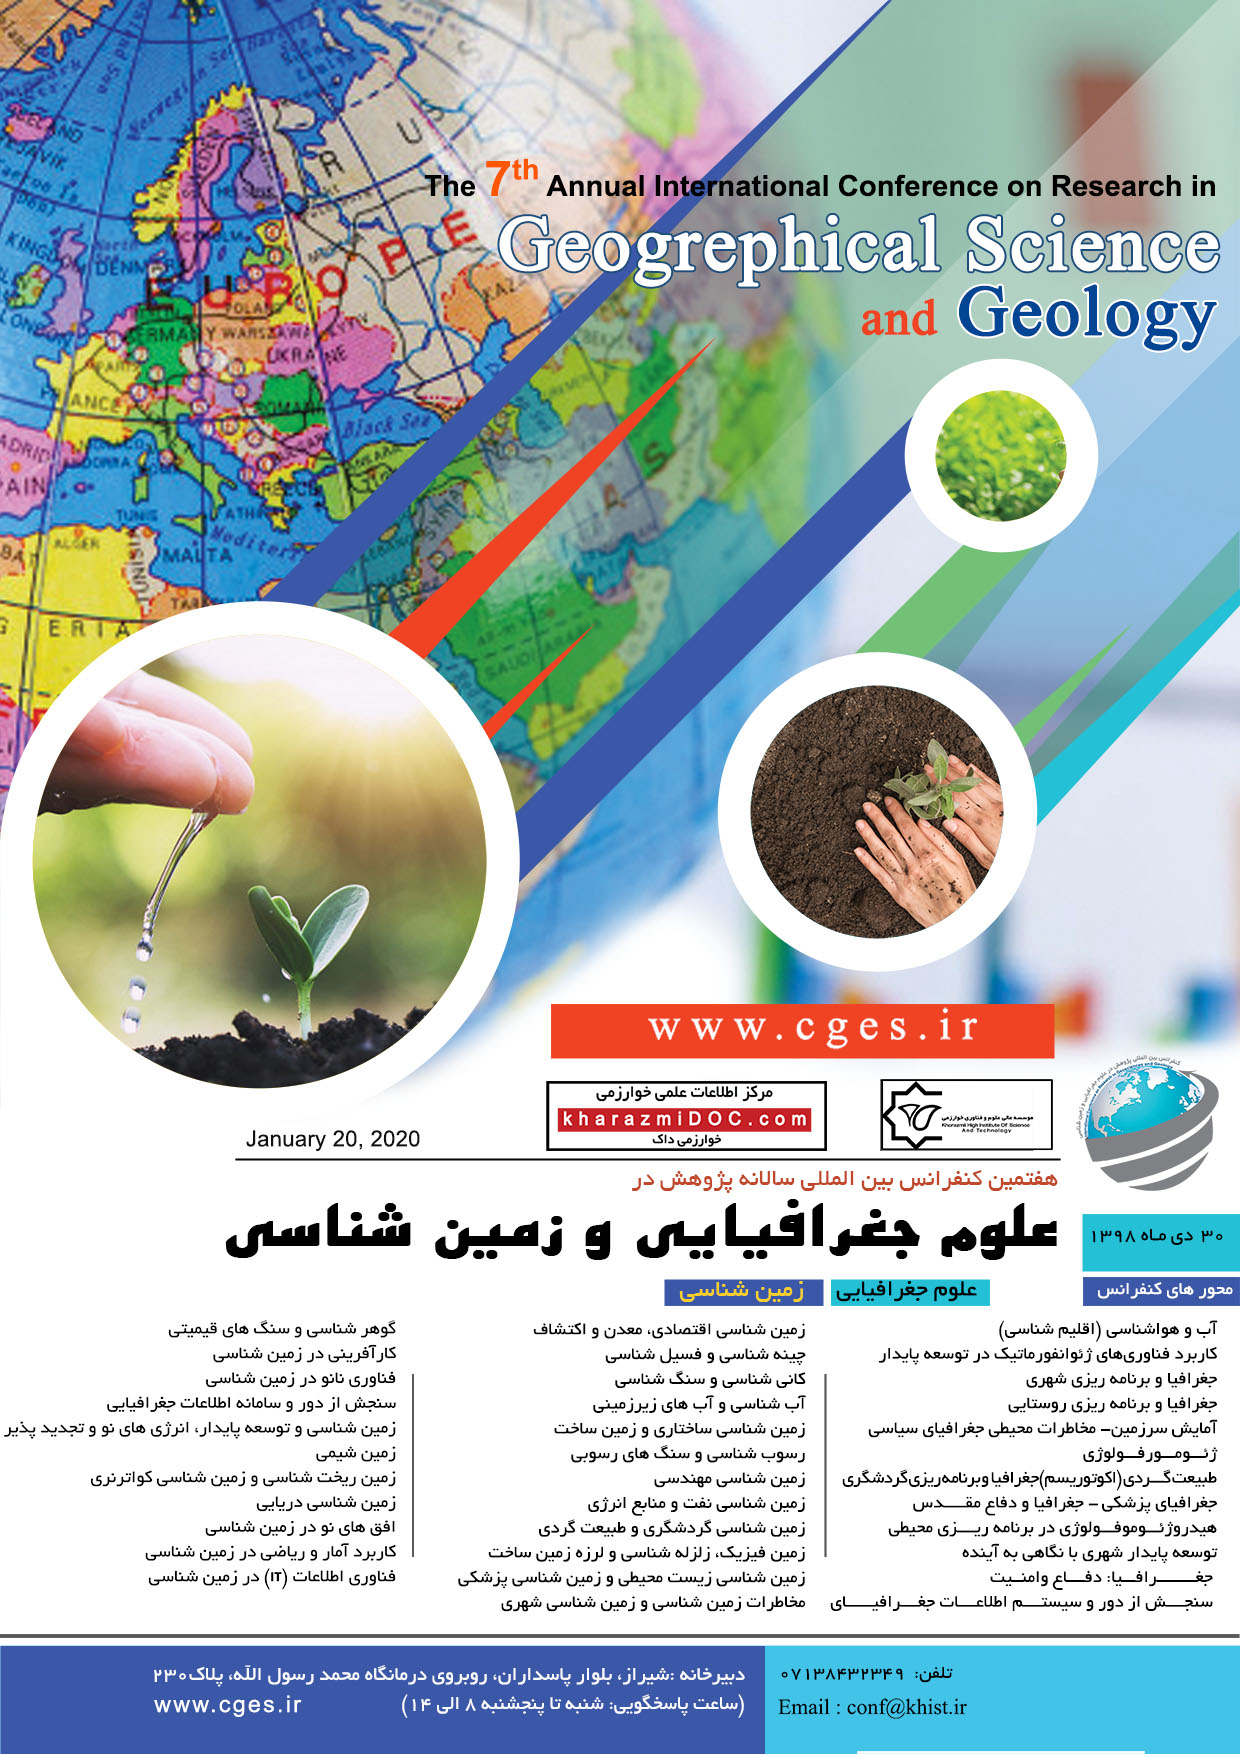 پوستر هفتمین کنفرانس بین المللی پژوهش در علوم جغرافیایی و زمین شناسی